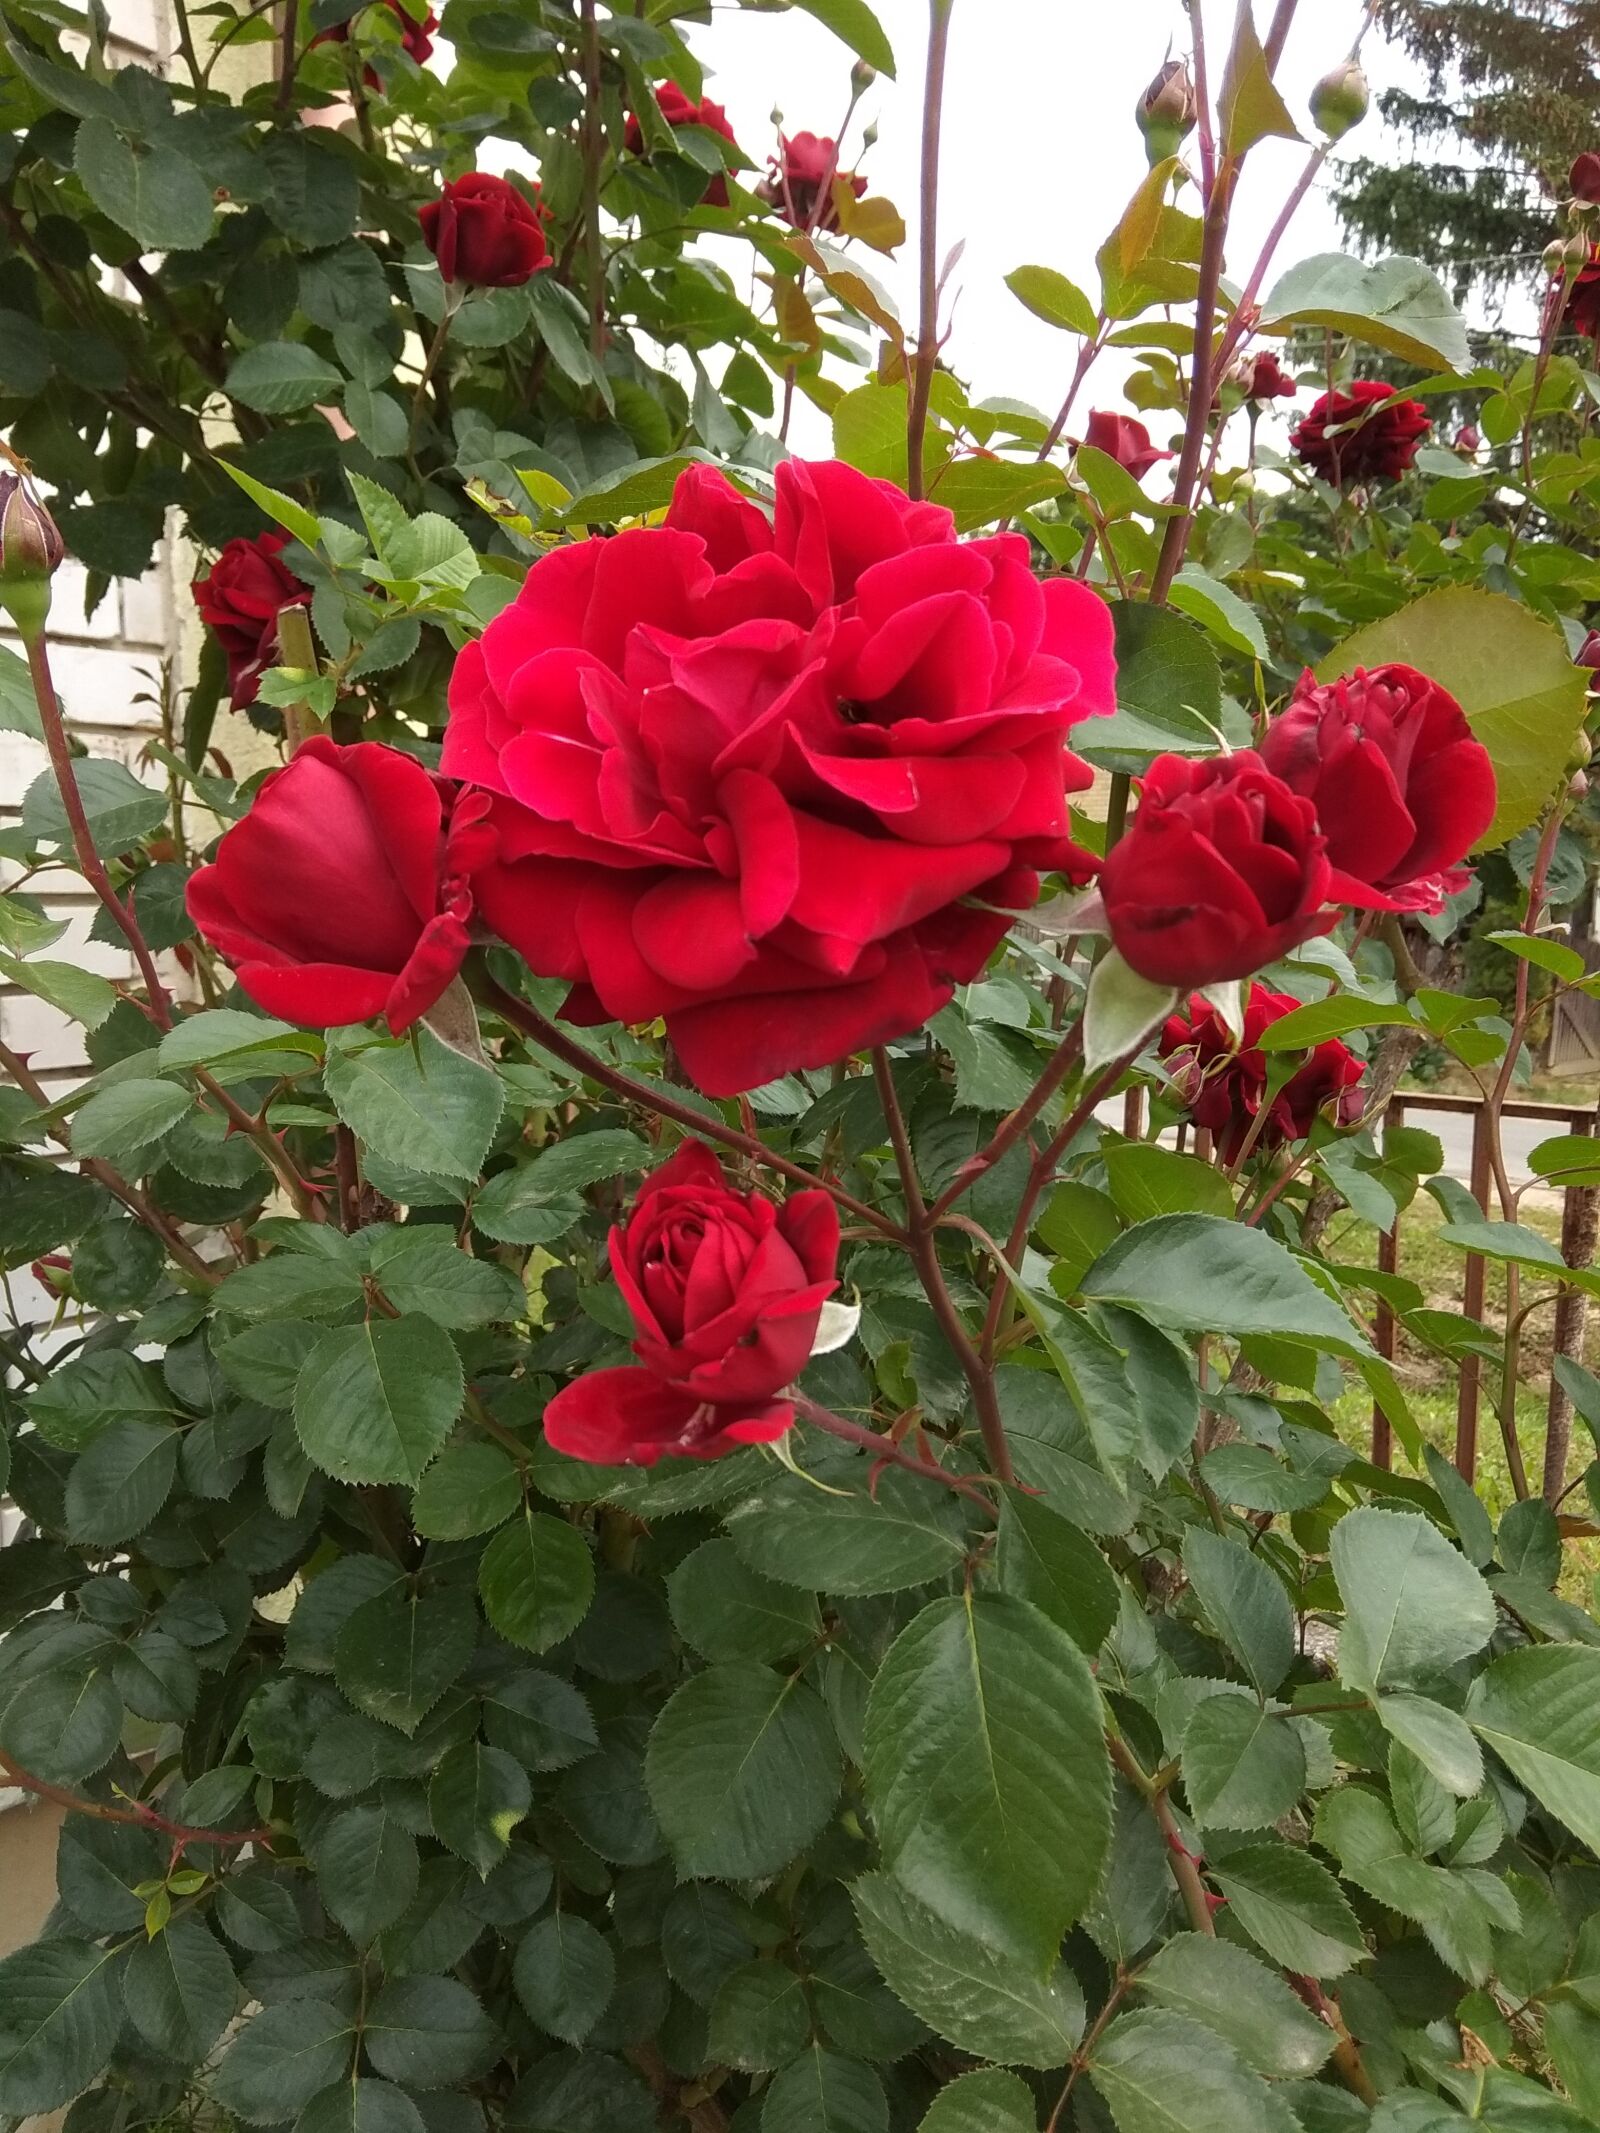 Xiaomi Redmi Note 5A sample photo. Rose, red rose, fut photography